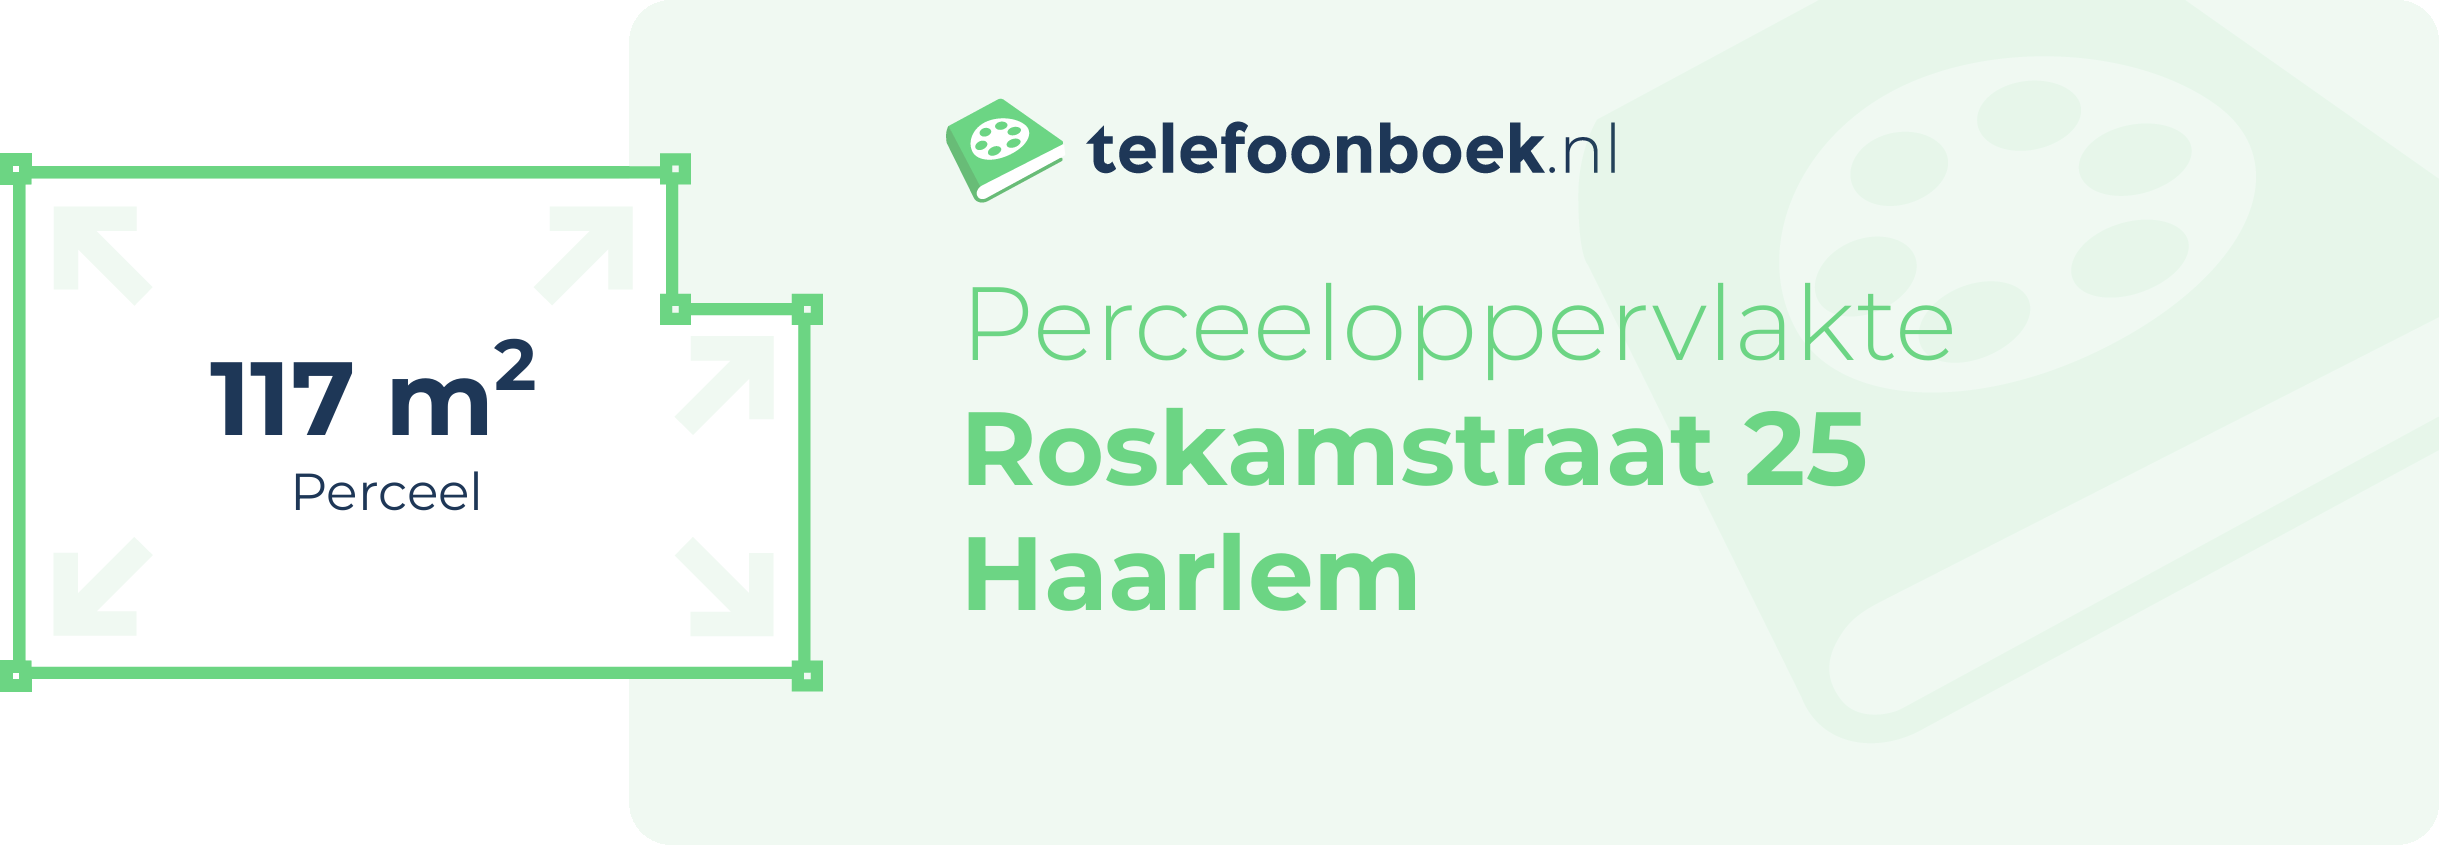 Perceeloppervlakte Roskamstraat 25 Haarlem